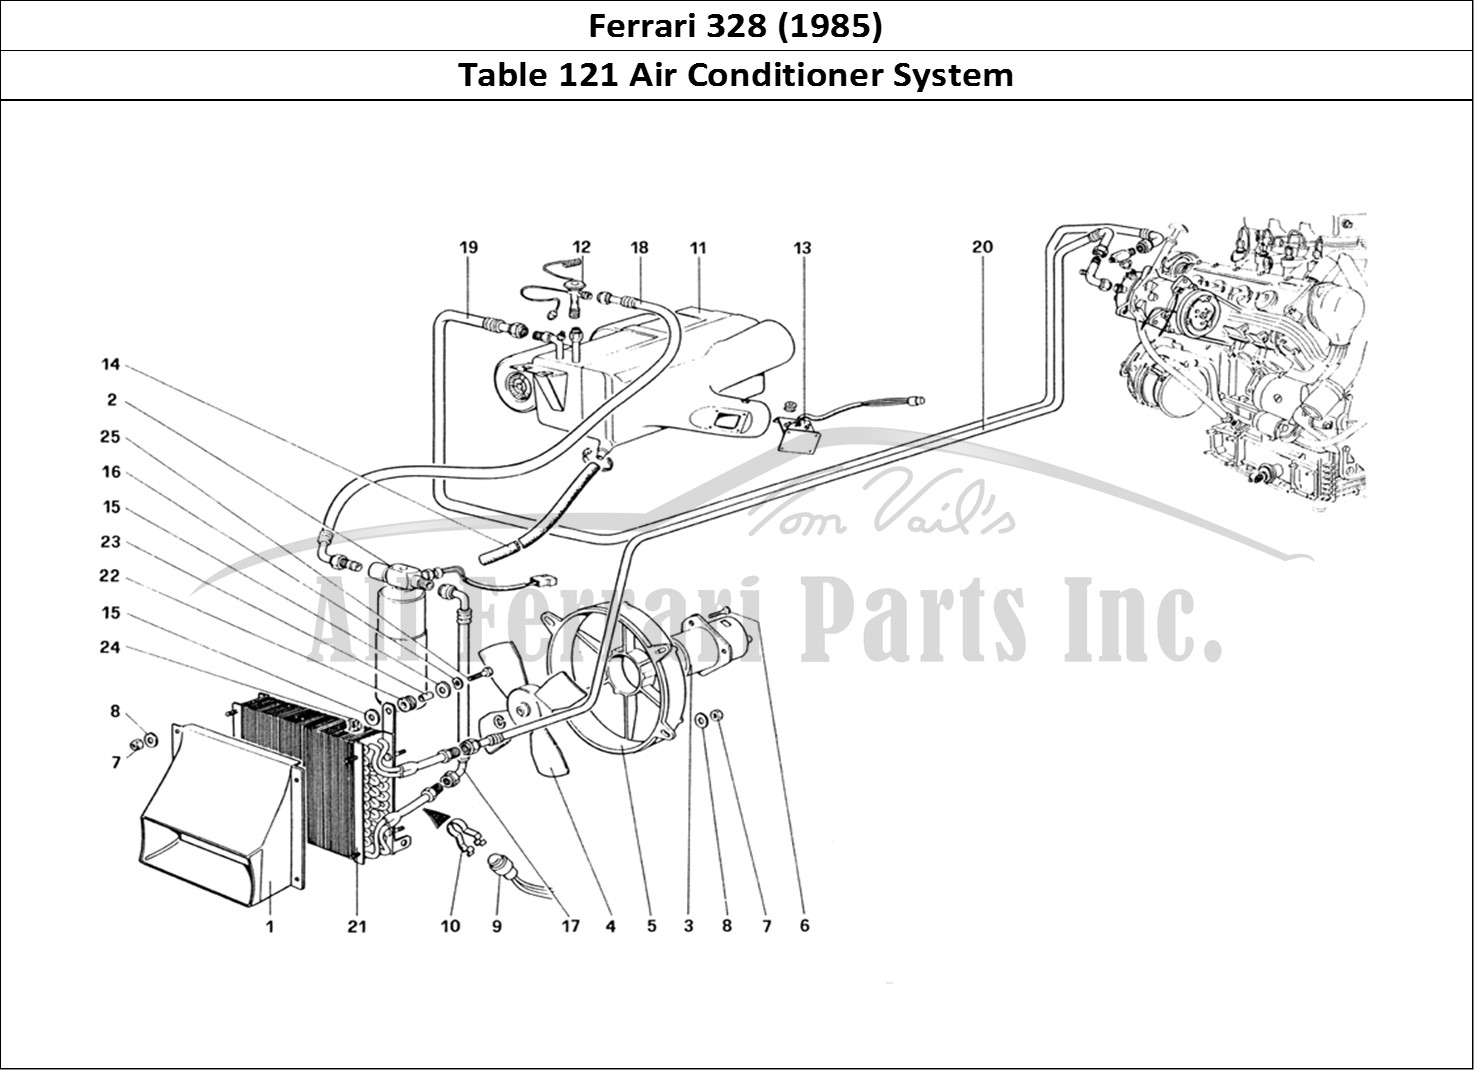 Ferrari Parts Ferrari 328 (1985) Page 121 Air Conditioning System